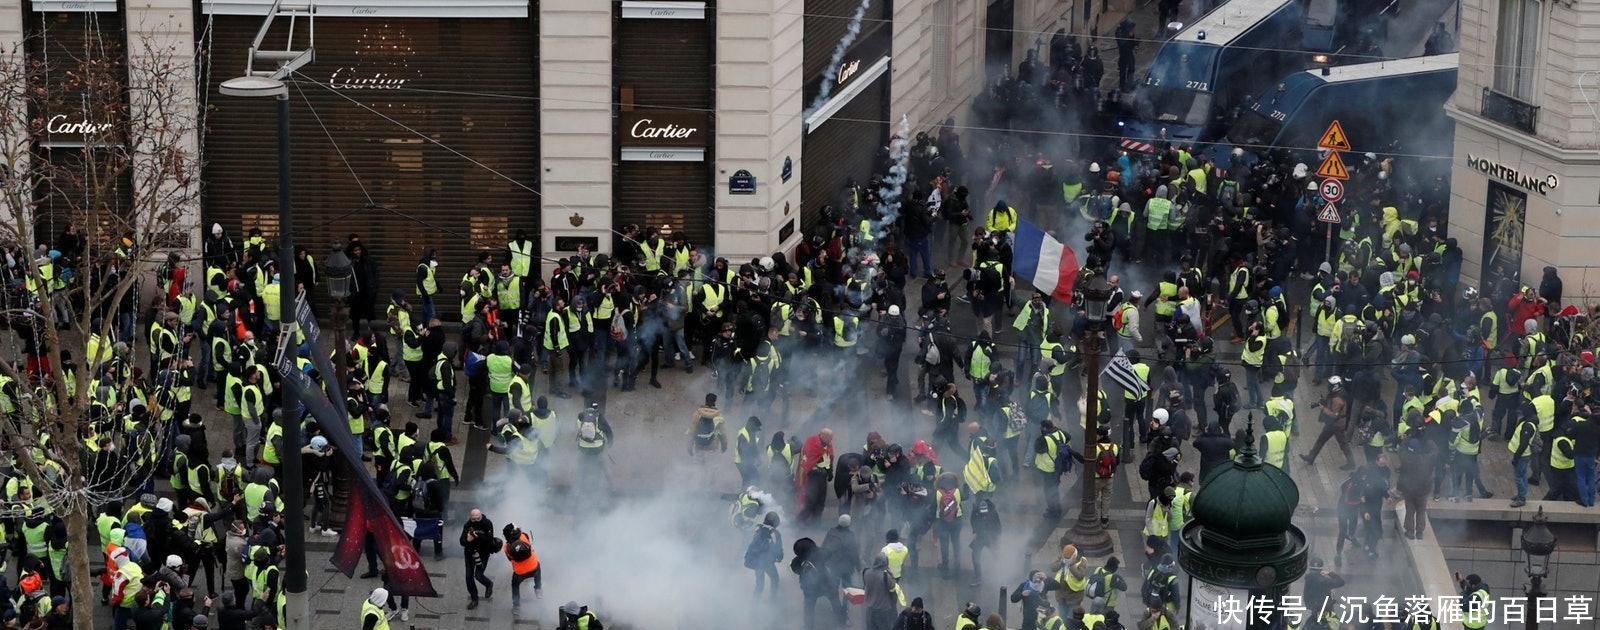 法国黄背心运动 万人冲向总统府 警方放催泪弹